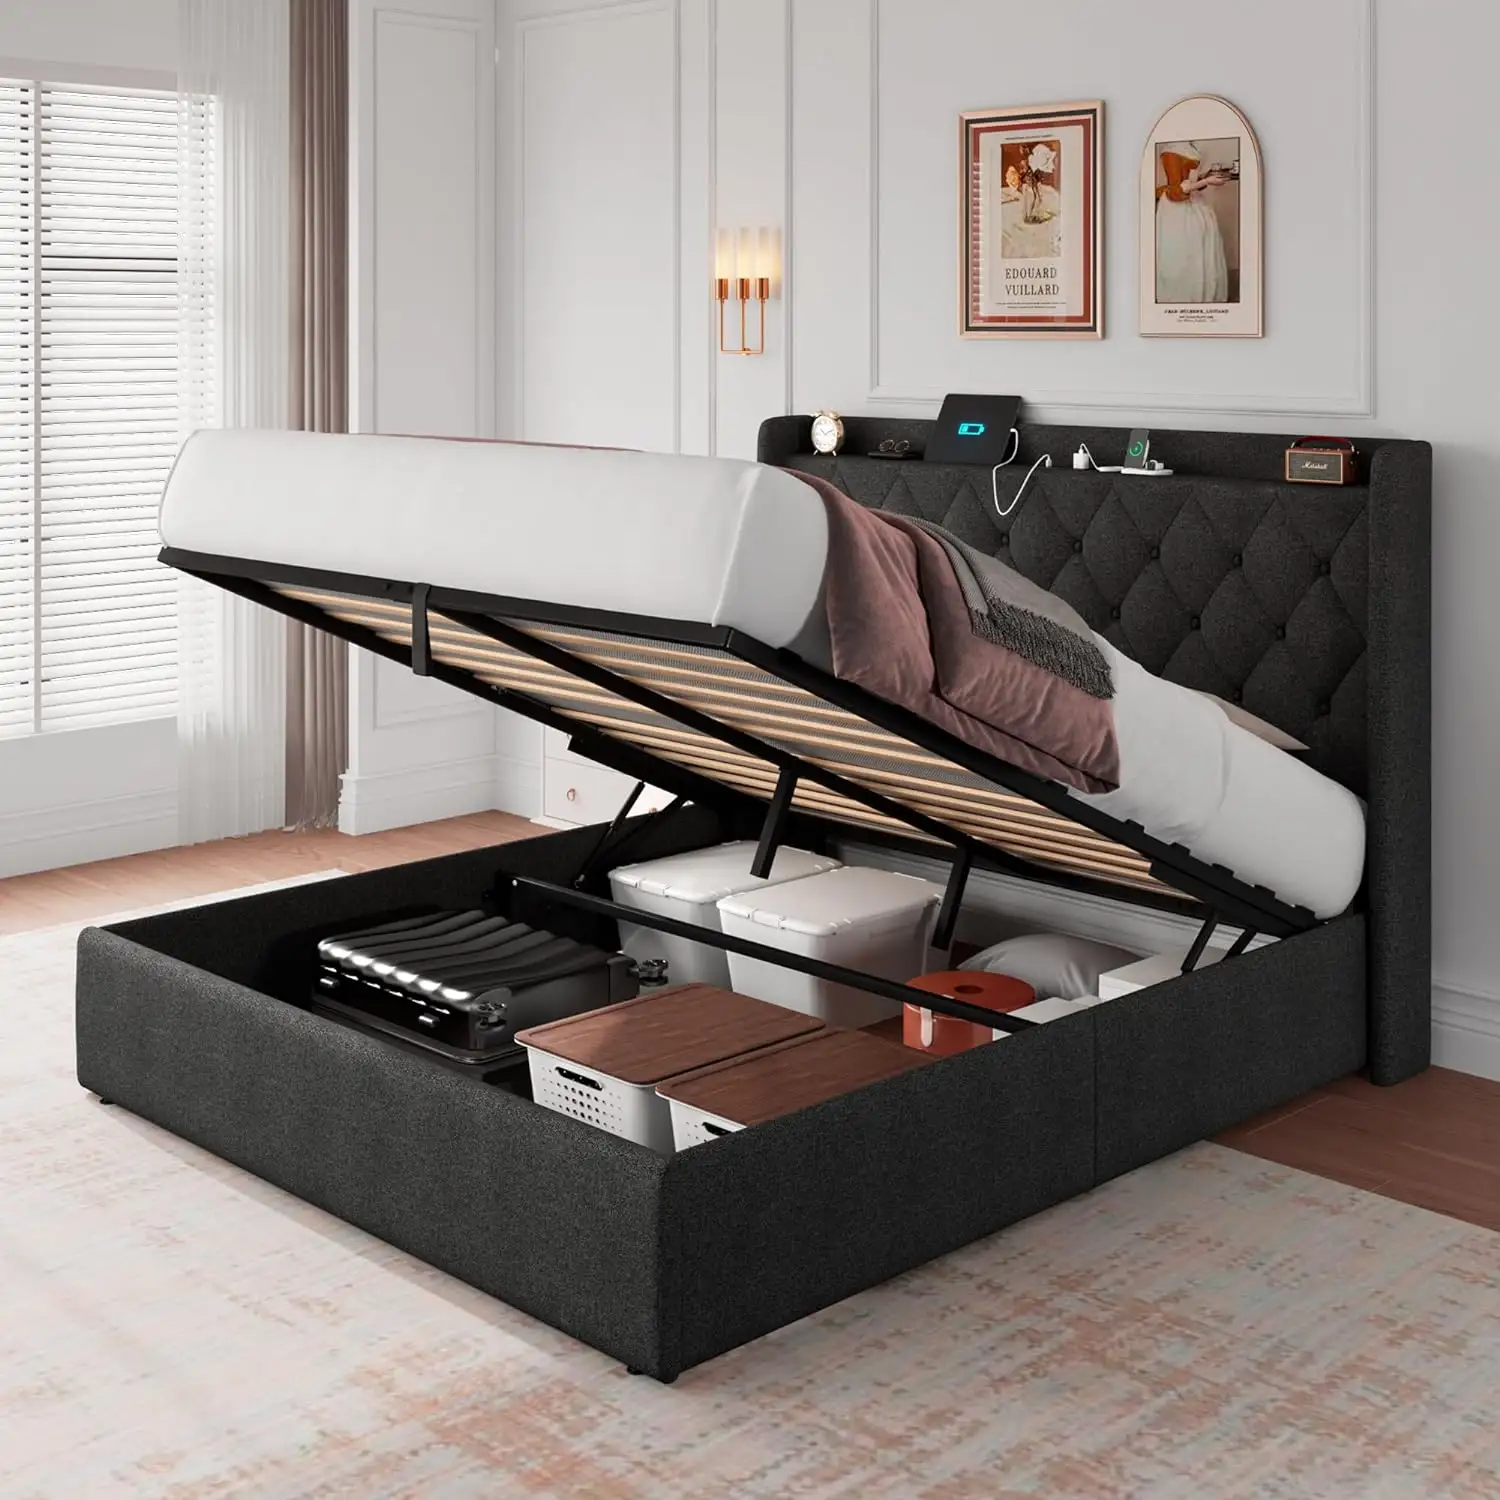 DI DAT Modern Design Style King size Wooden bed frame for bedroom USB Port socket underbed storage  RGB led lighting